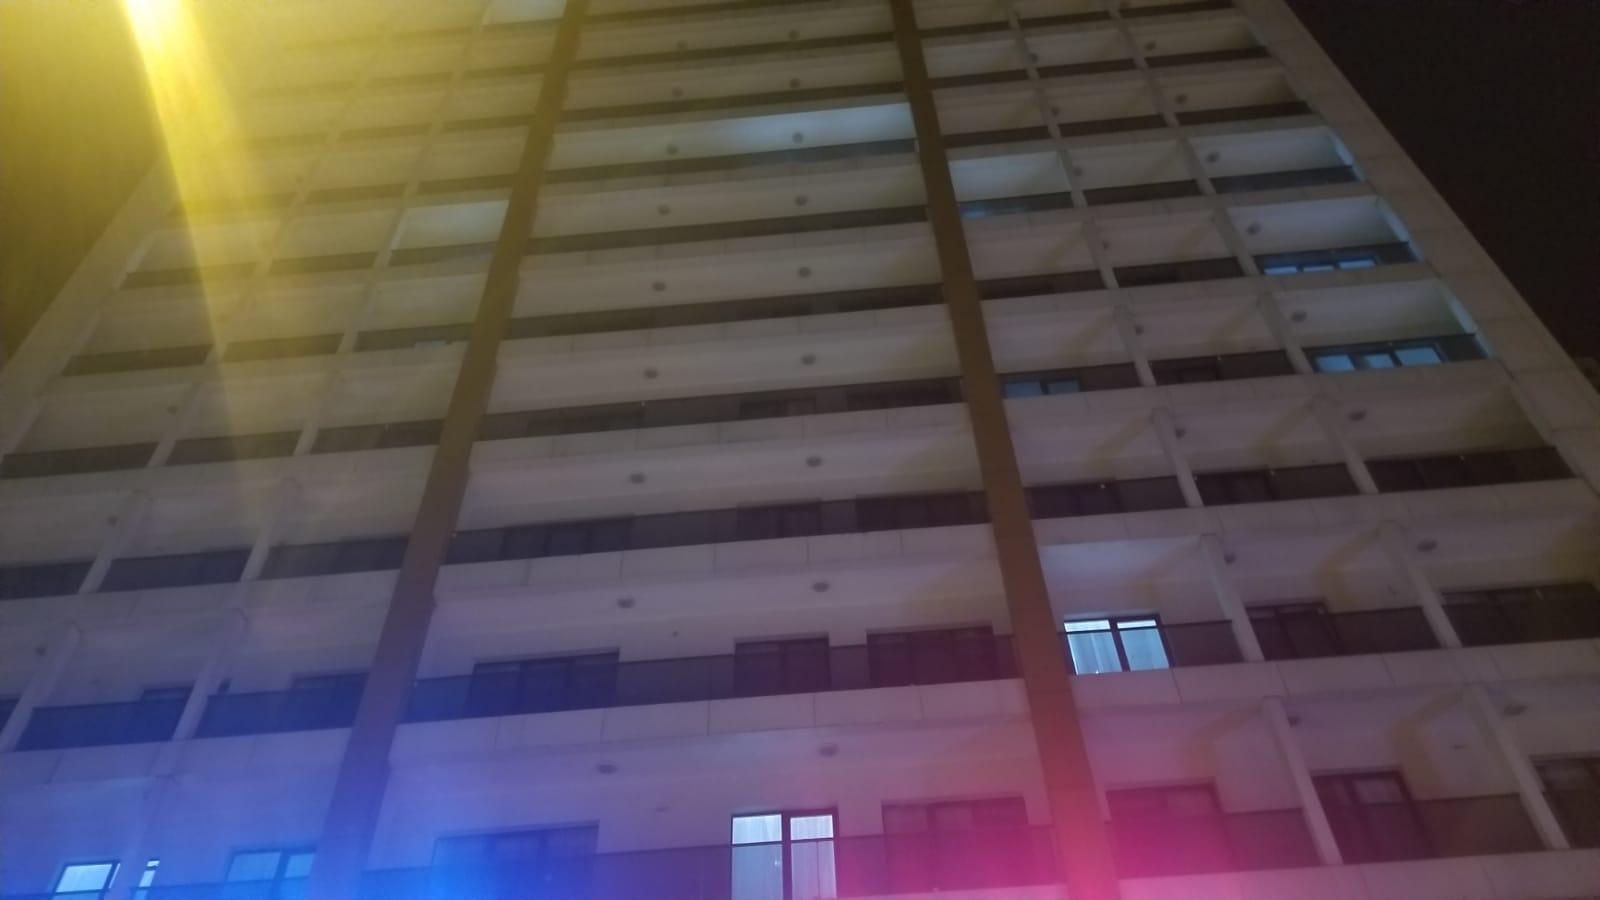 Esenyurtta genç kız otelin 8. katından düşerek öldü